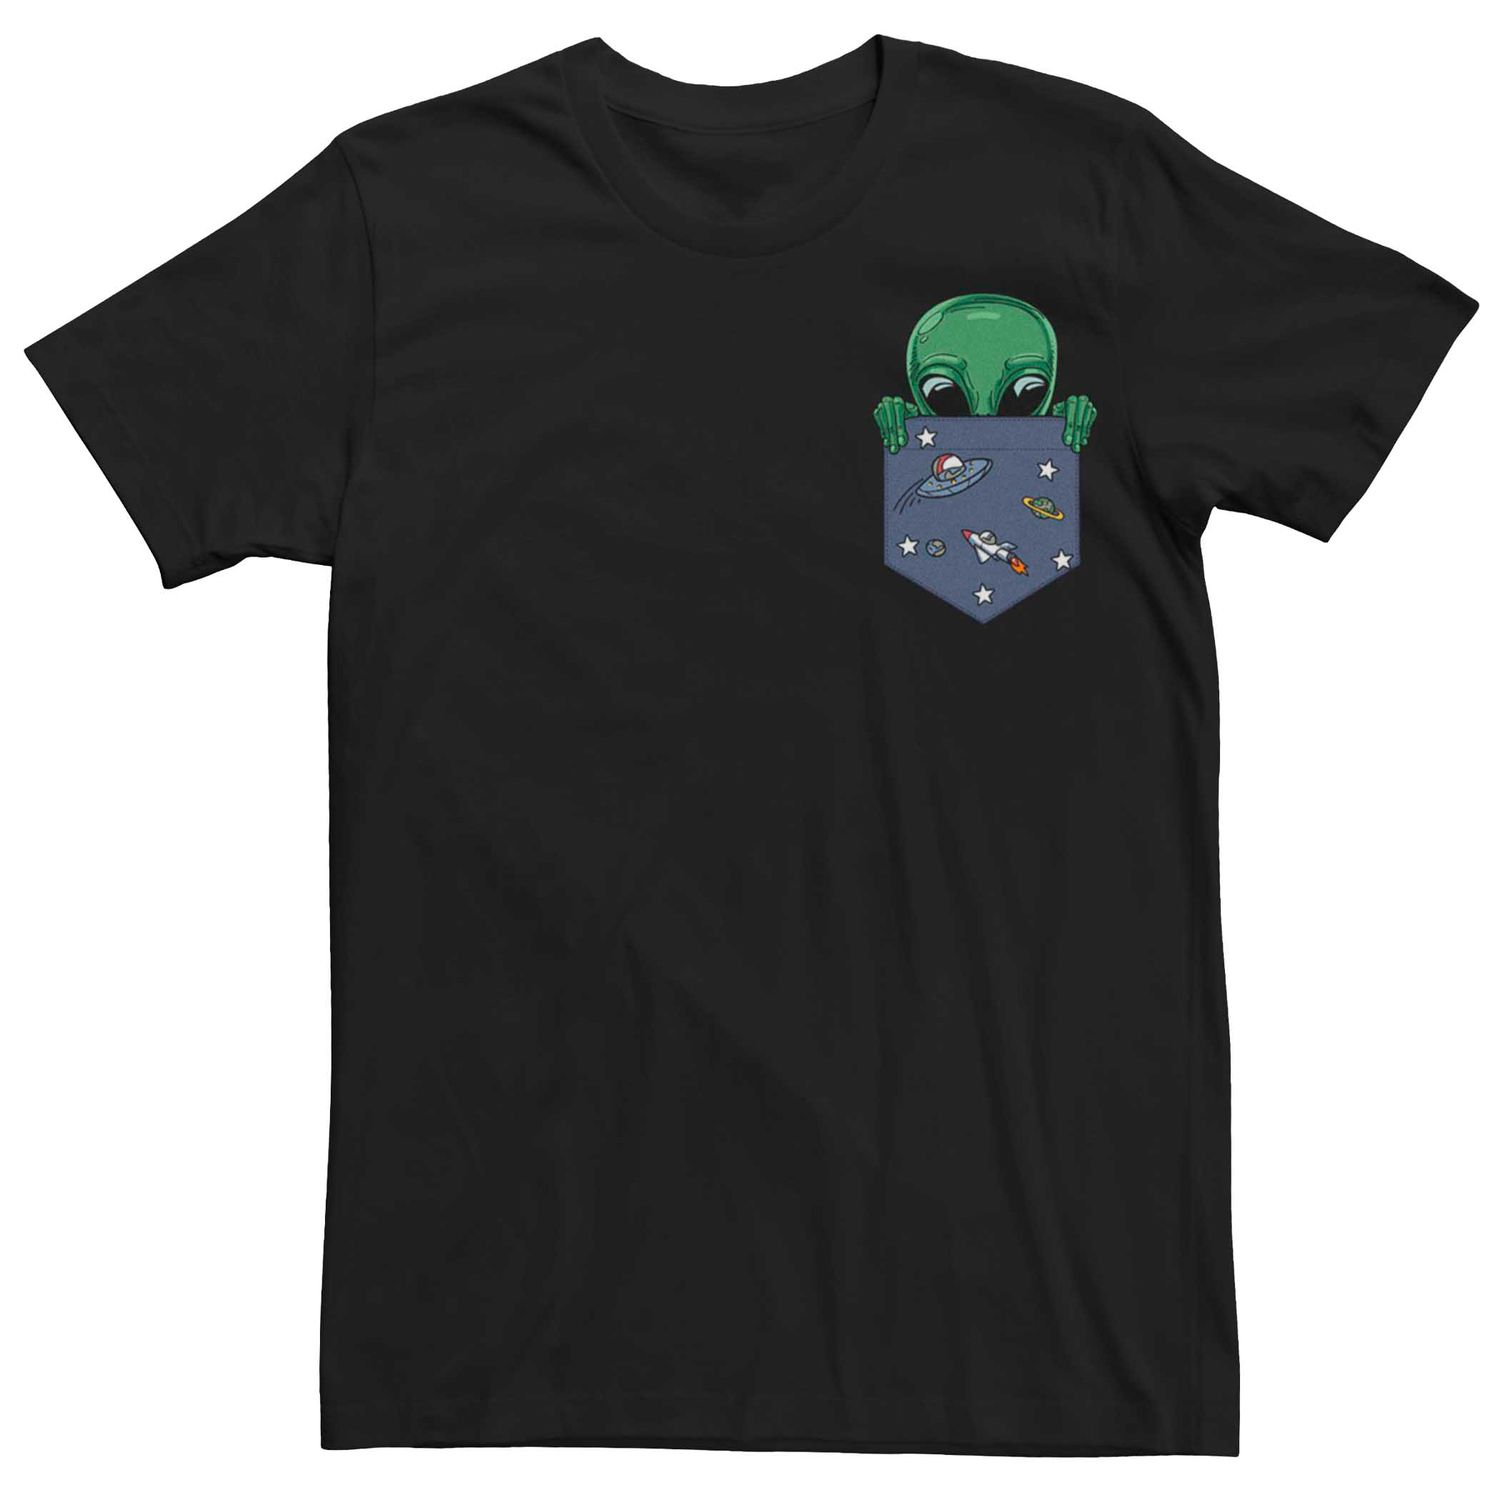 Мужская футболка с рисунком Alien Pocket Peek Licensed Character мужская футболка ripndip smoking alien pocket чёрный размер m